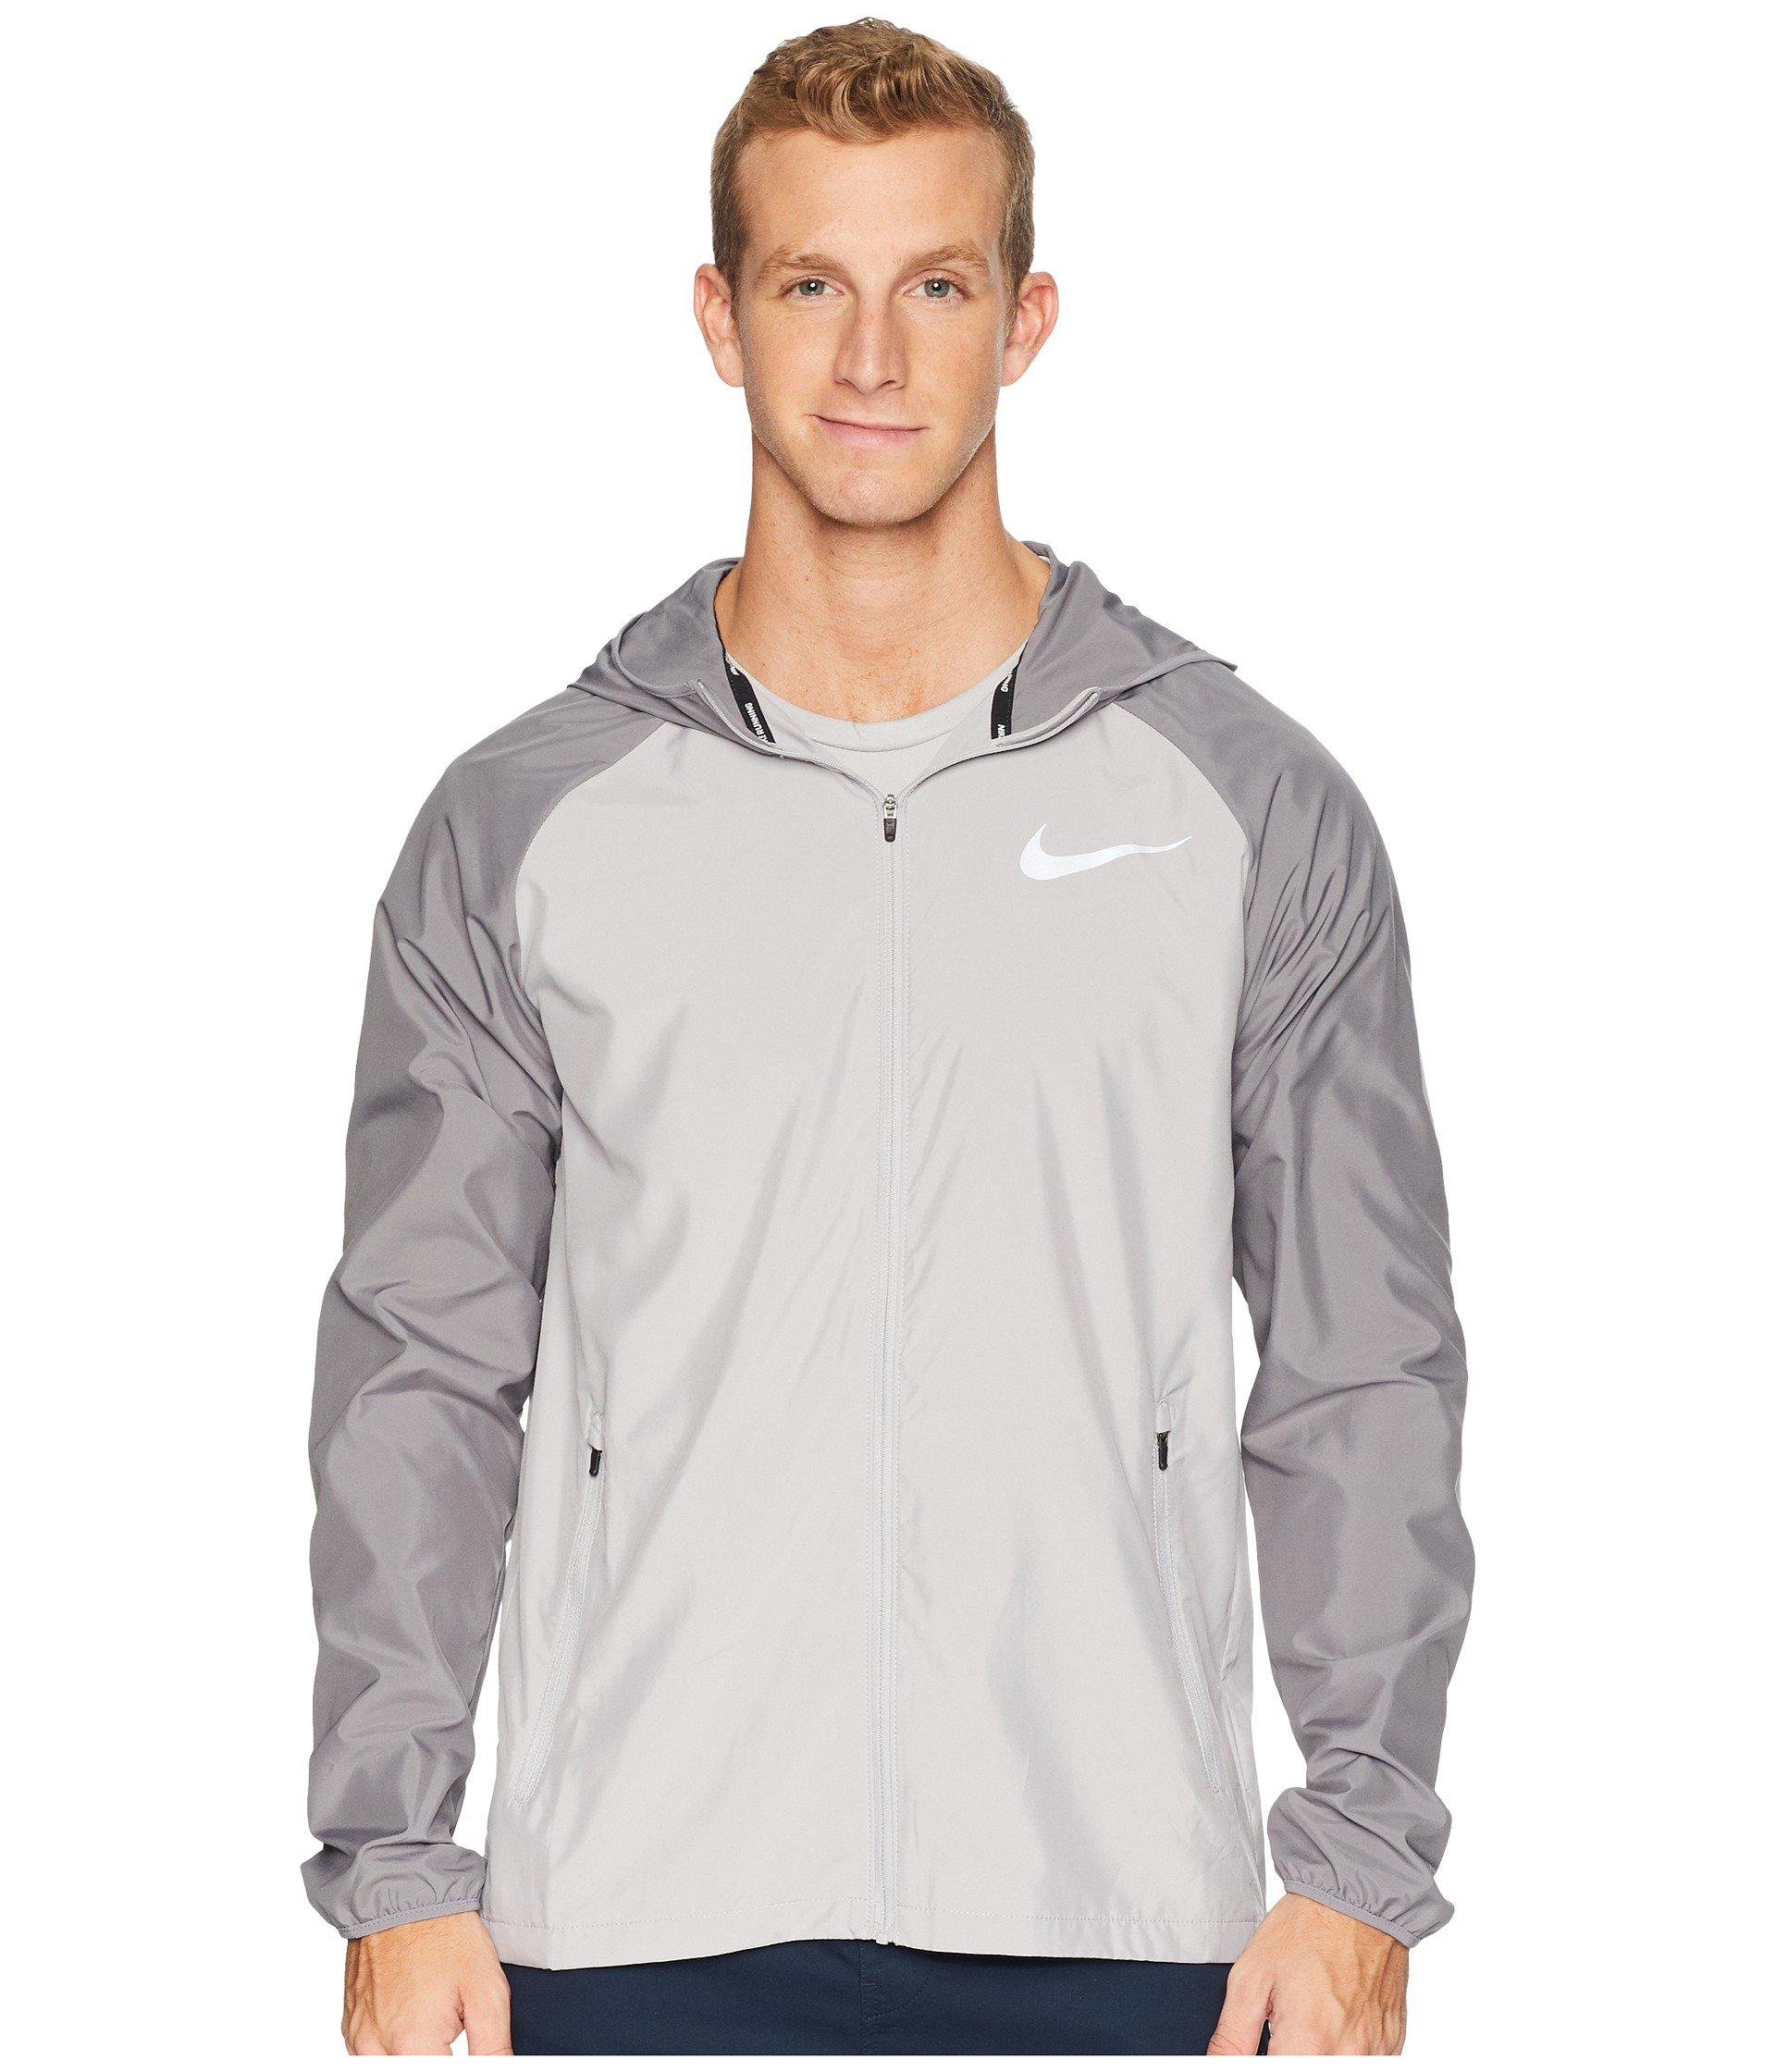 Buy men's hooded running jacket nike essential cheap online